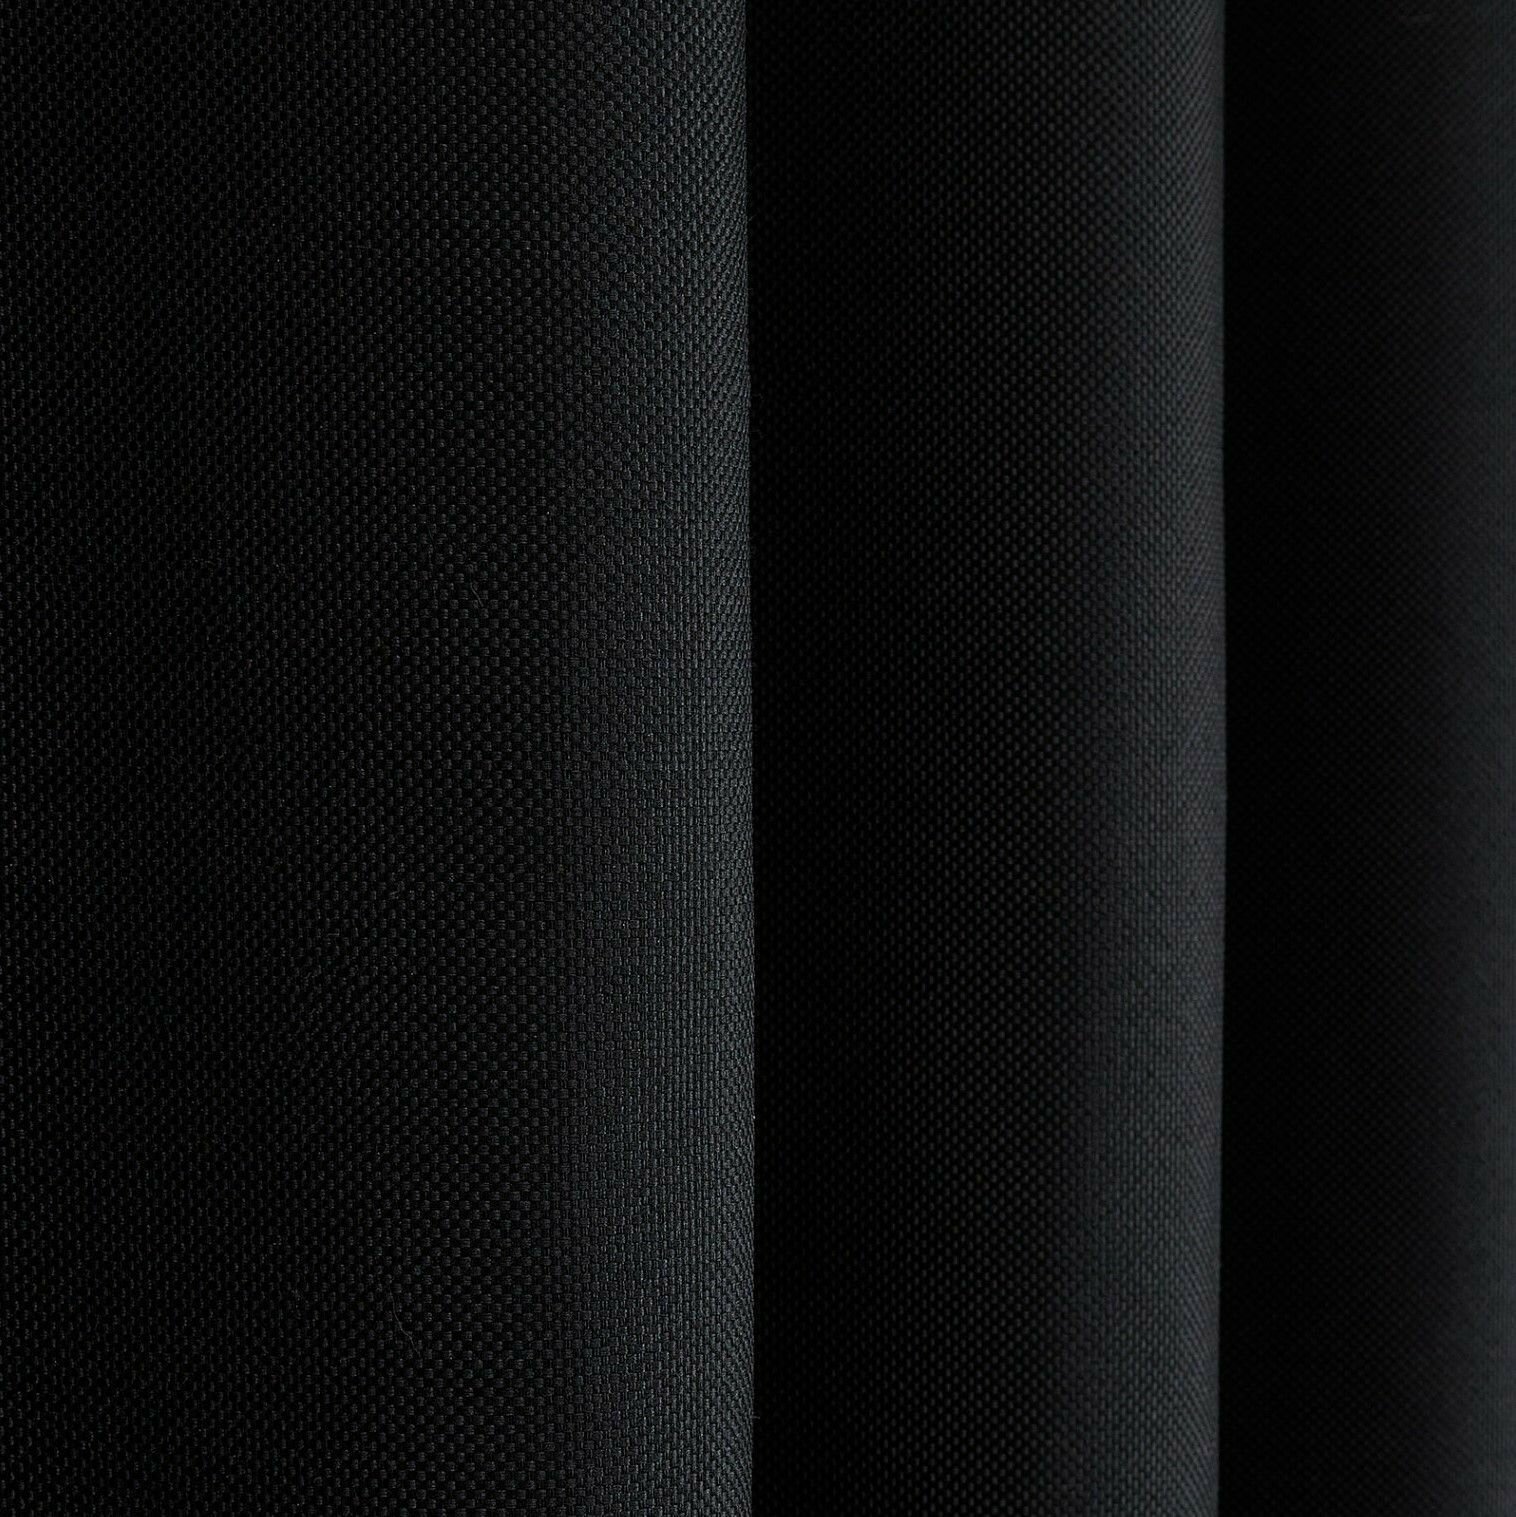 Штора для комнаты 150x250 см Блэкаут рогожка Shtoraland на ленте для крючков, одна портьера для гостиной, спальни, детской. Черный цвет